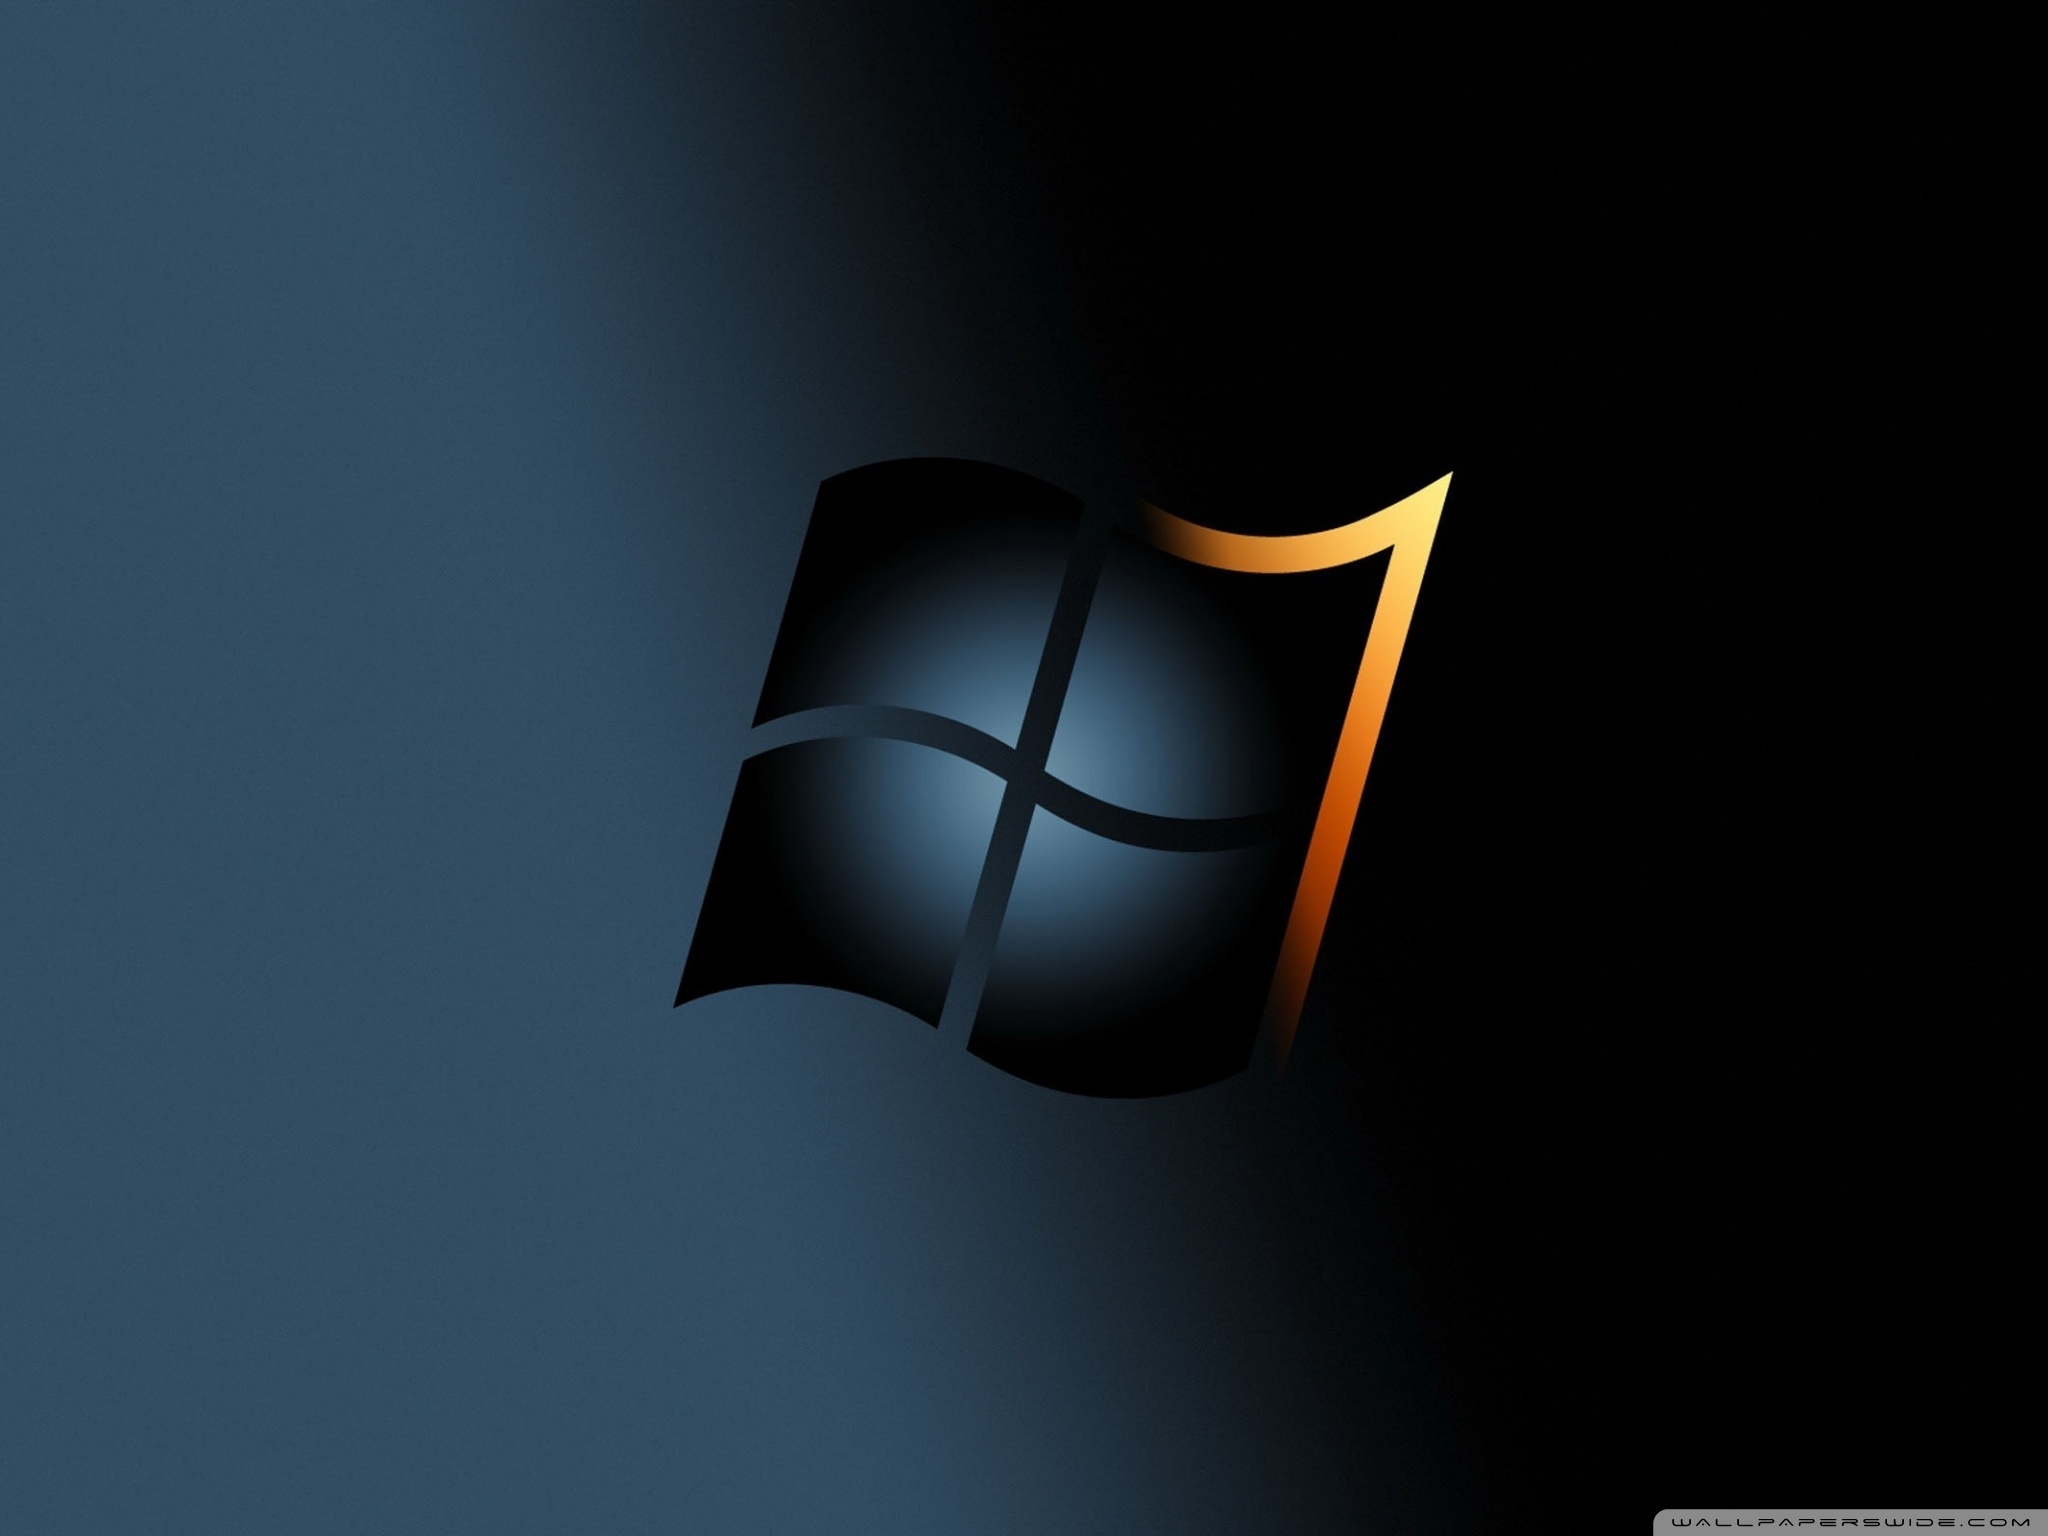 Hình nền Windows 7 Ultra HD đen miễn phí: Bạn muốn một hình nền đen nhưng vẫn đầy ấn tượng và thu hút? Tải ngay hình nền Windows 7 Ultra HD đen miễn phí để được trải nghiệm những hình ảnh cực kỳ sắc nét và đầy uy lực. Không chỉ là một lựa chọn đơn thuần, mà còn là một phong cách và cá tính riêng của bạn.